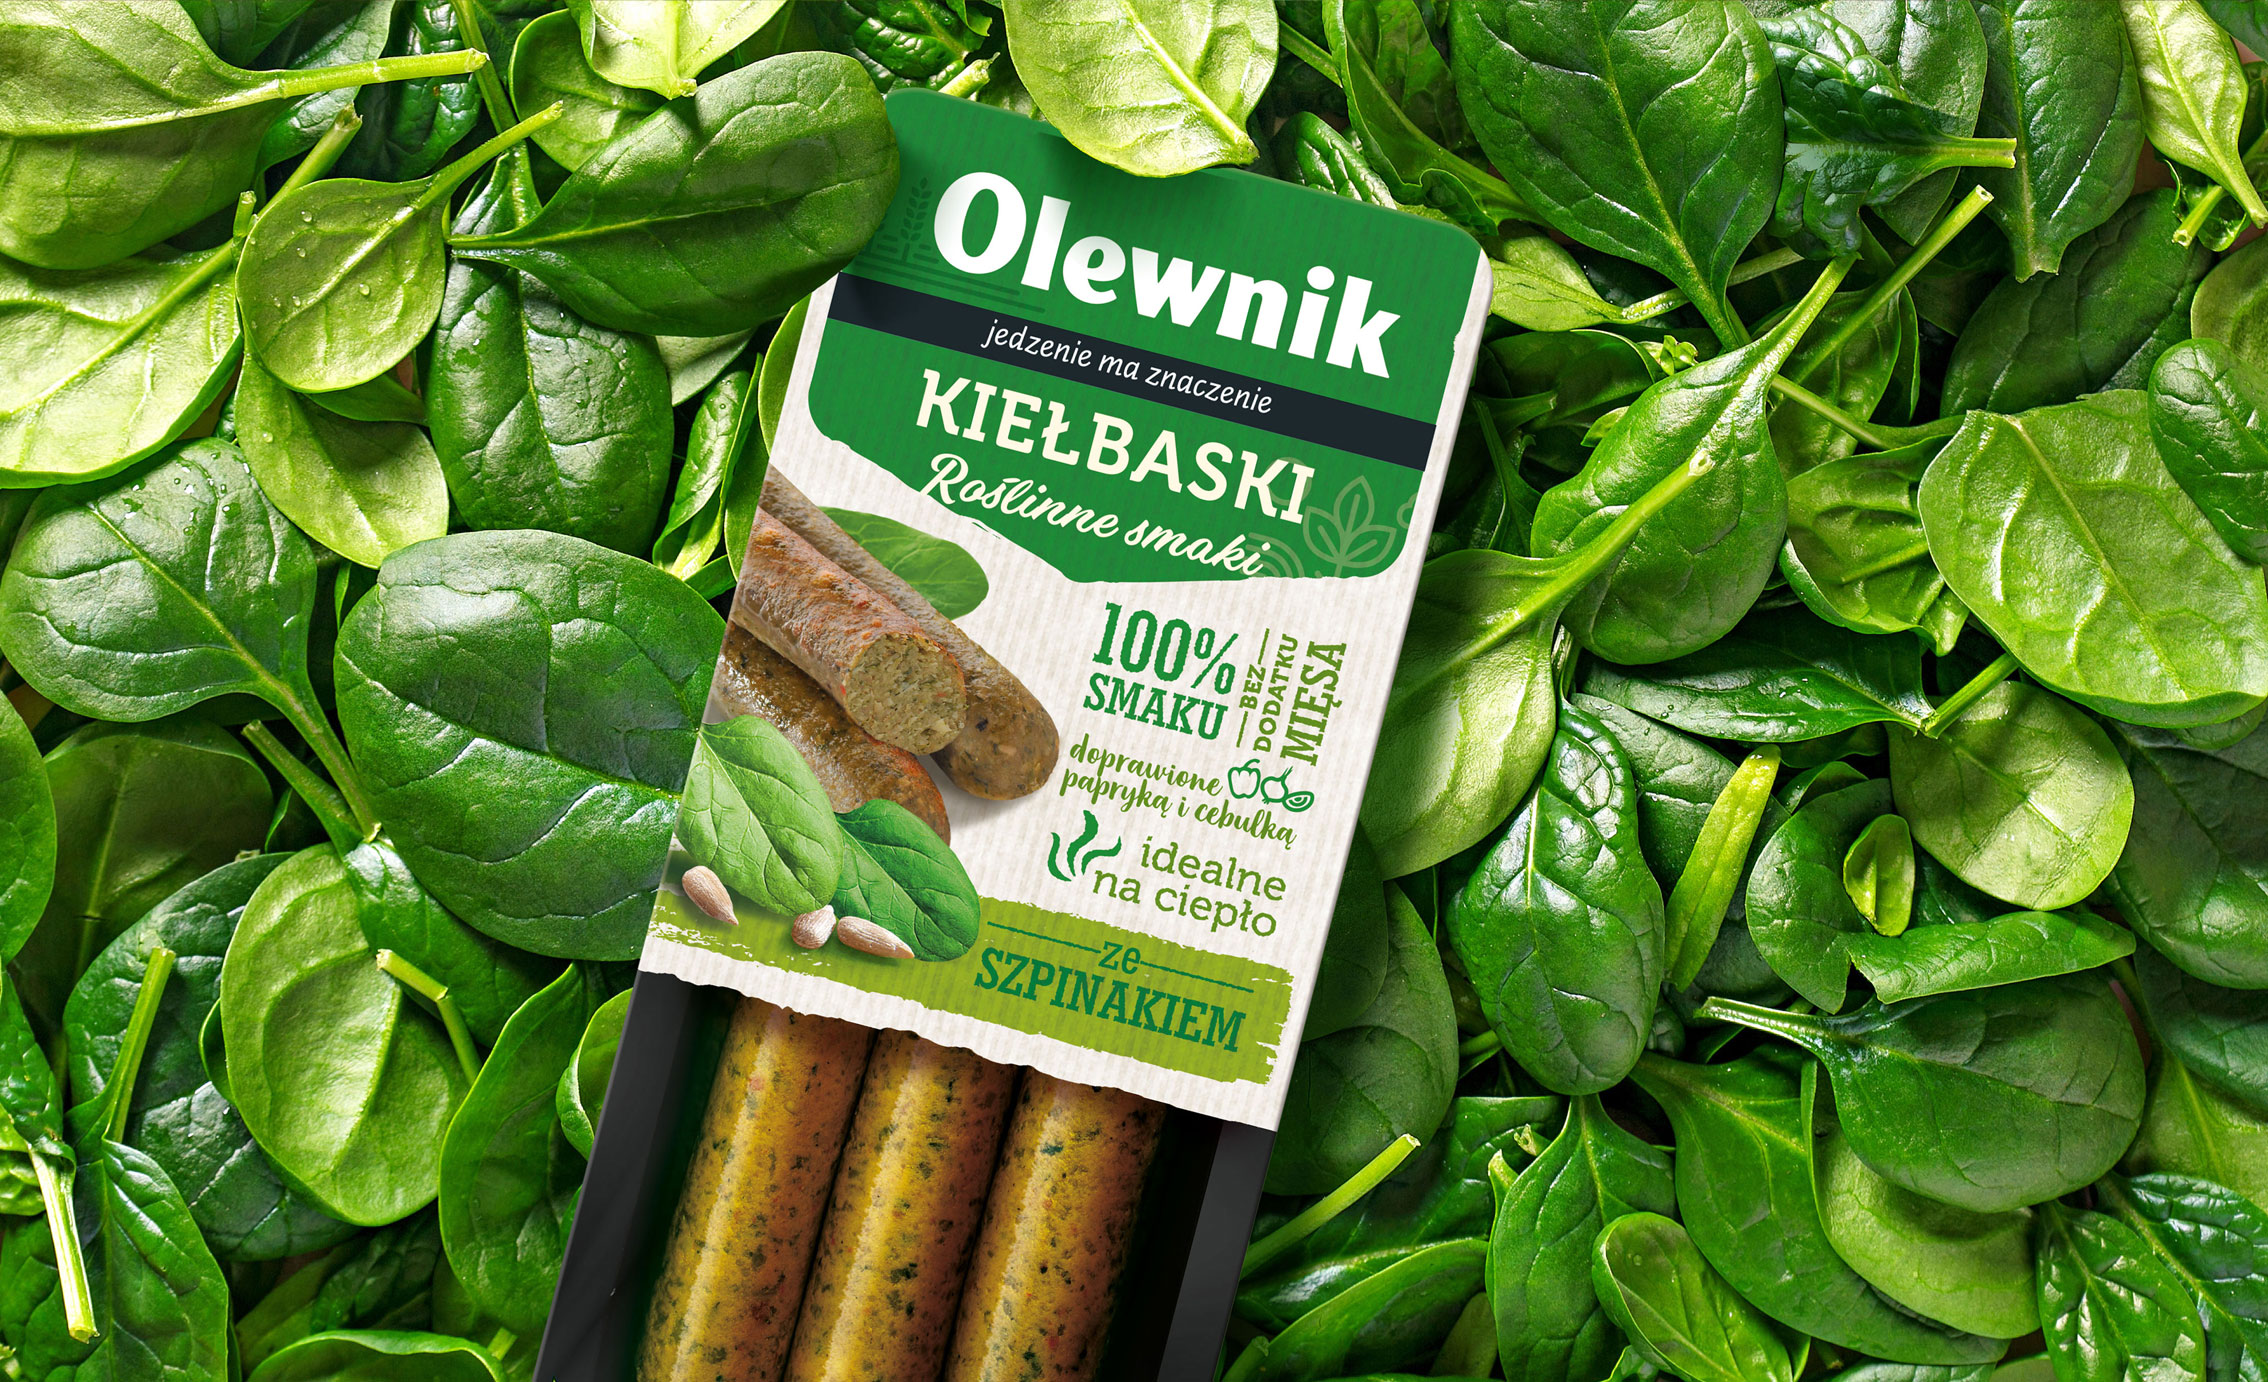 Produkt roślinny Olewnik - kiełbaski ze szpinaku